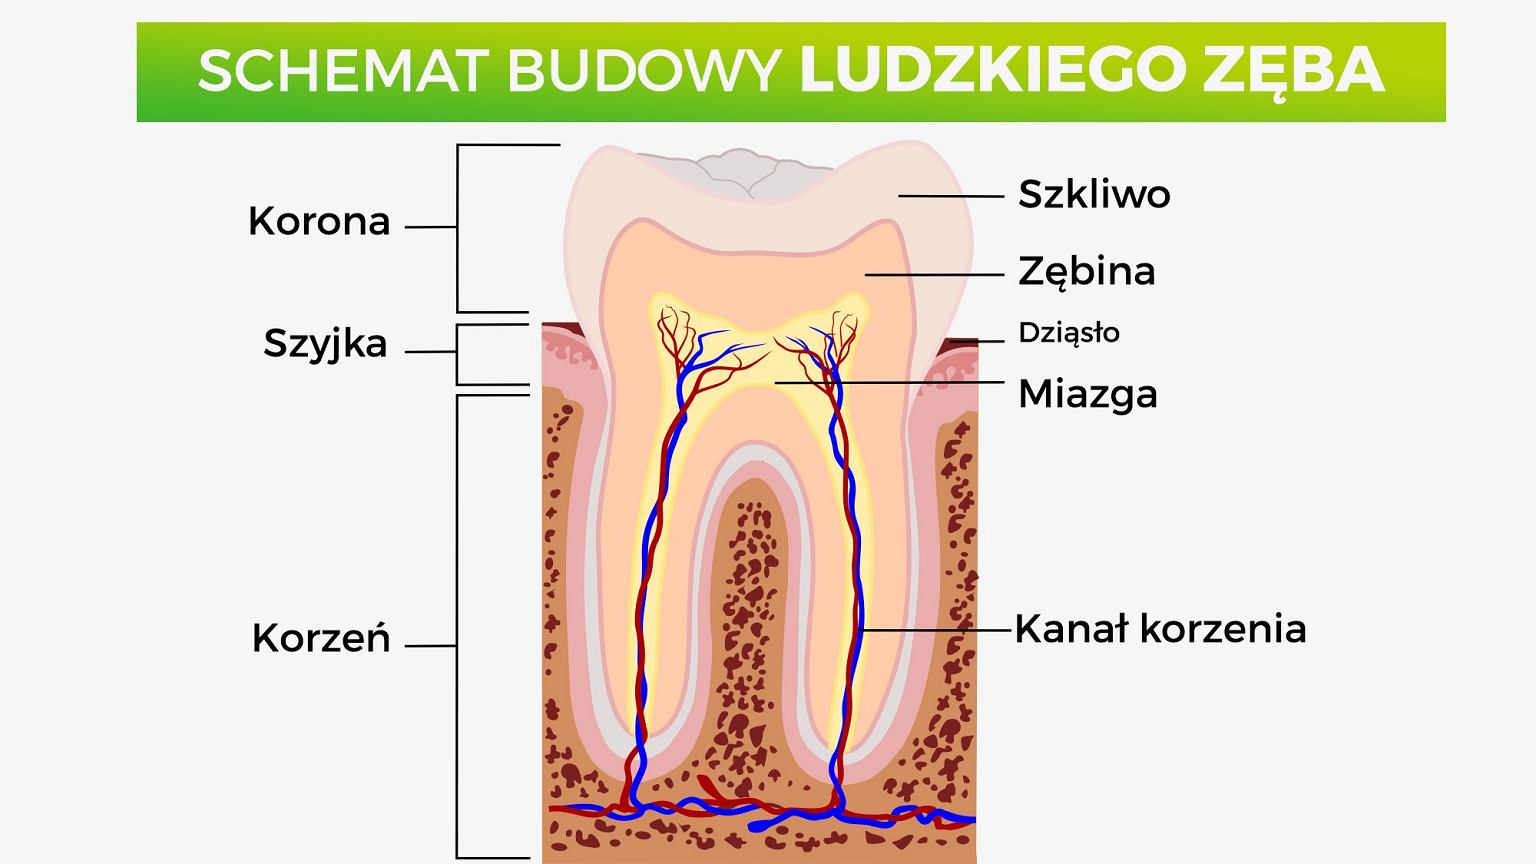 Schemat budowy ludzkiego zęba